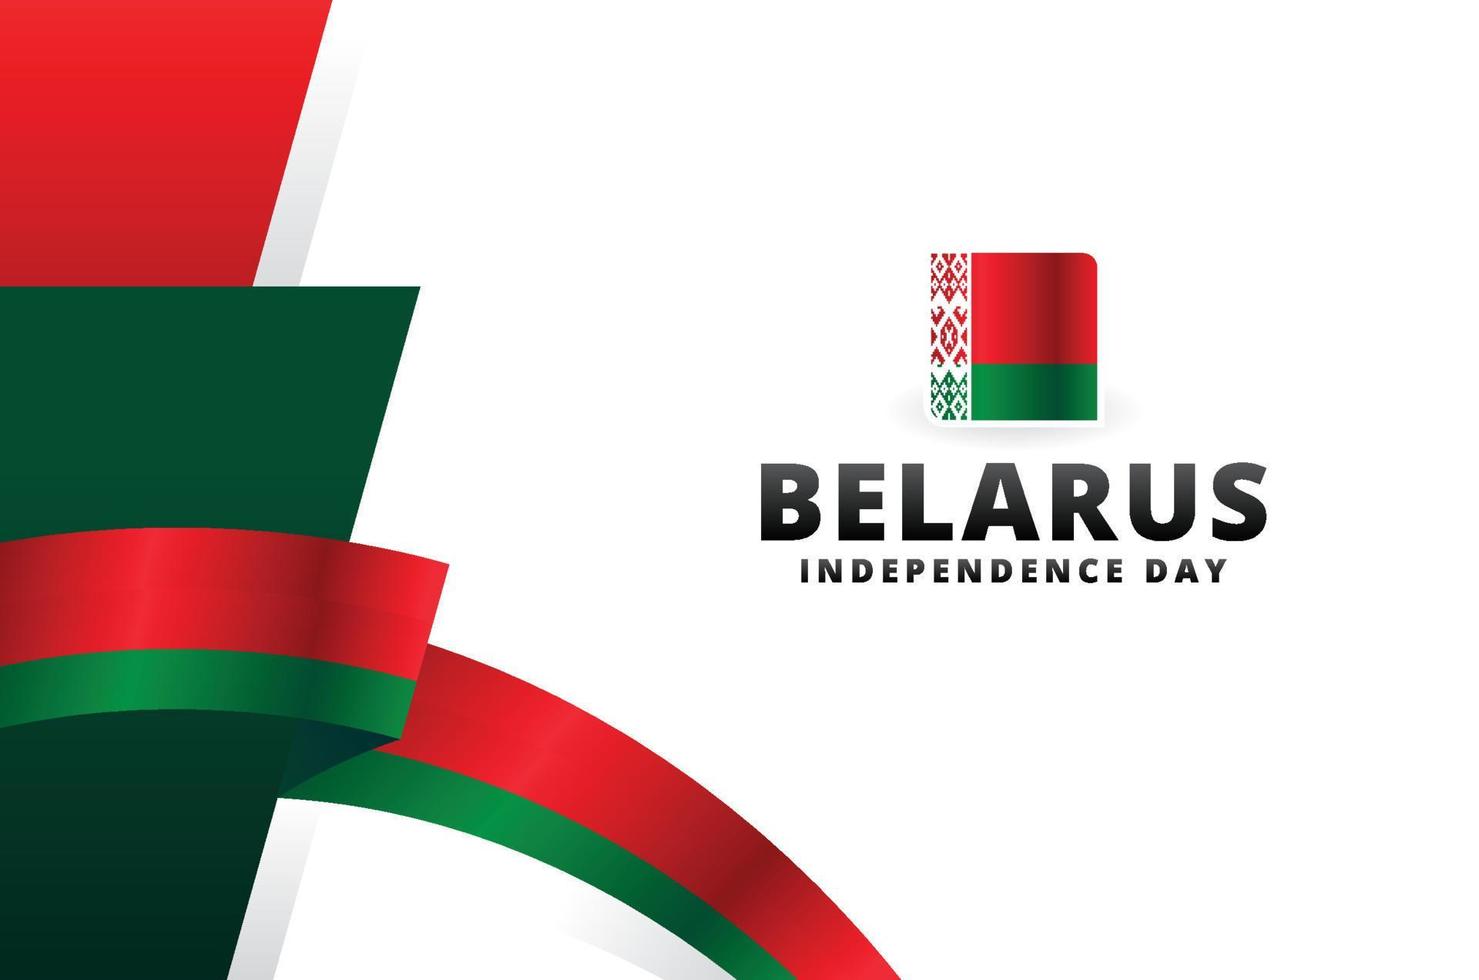 Belarus Independence Day Design Background For International Moment vector